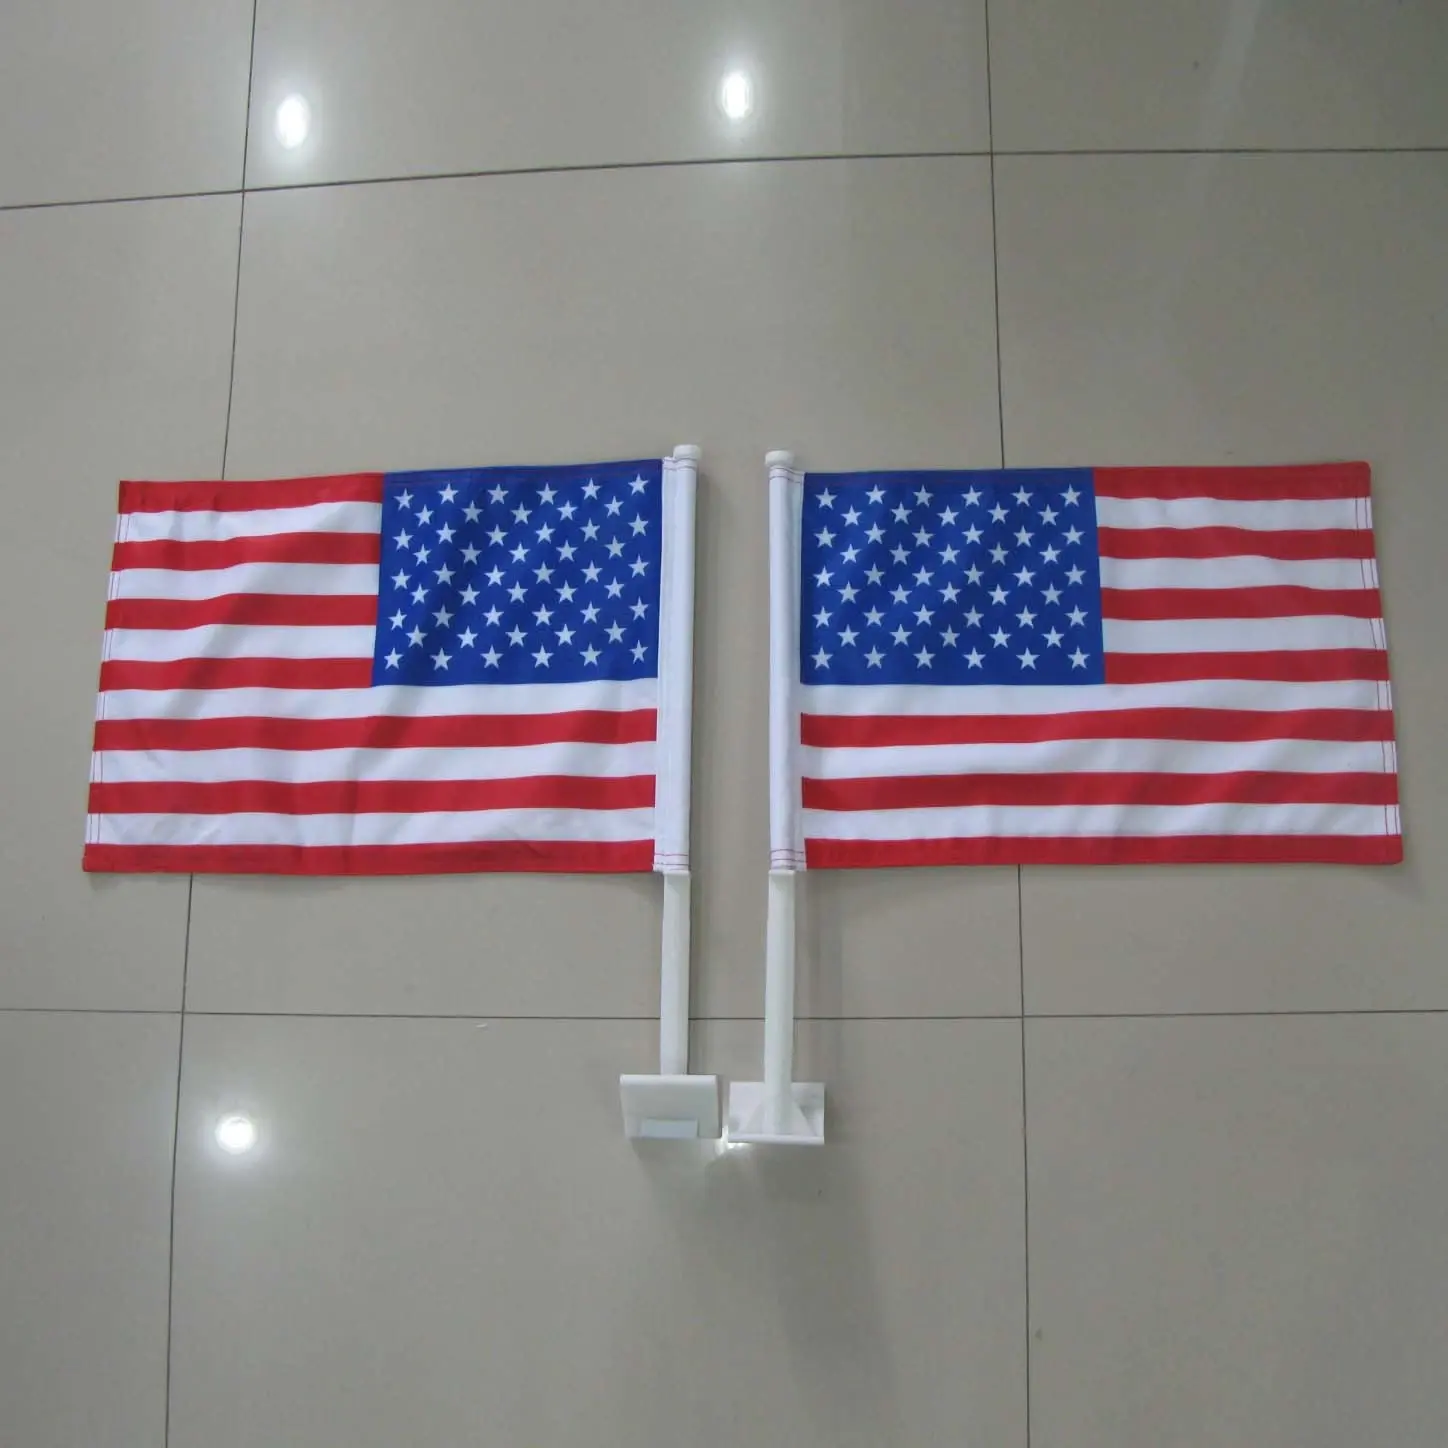 JARMOO ตกแต่งที่กําหนดเองการพิมพ์ 12x18 นิ้วกทนทานสองด้านเสาที่แข็งแกร่งอเมริกันแบนเนอร์ USA รถธงการเลือกตั้งธง